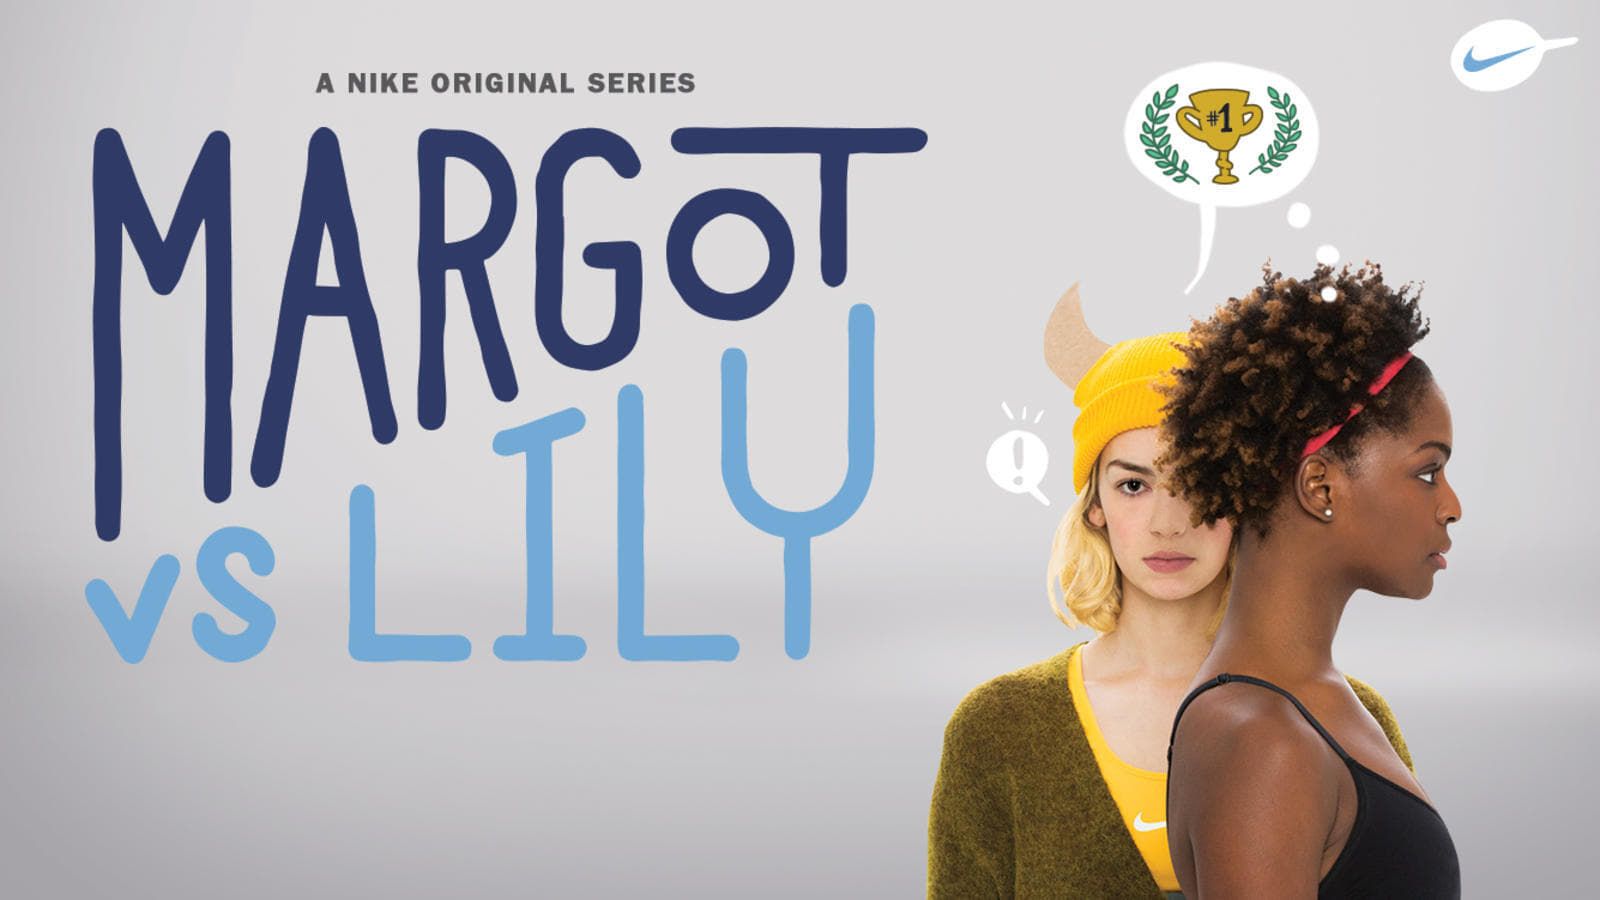 Cubierta de Margot vs. Lily